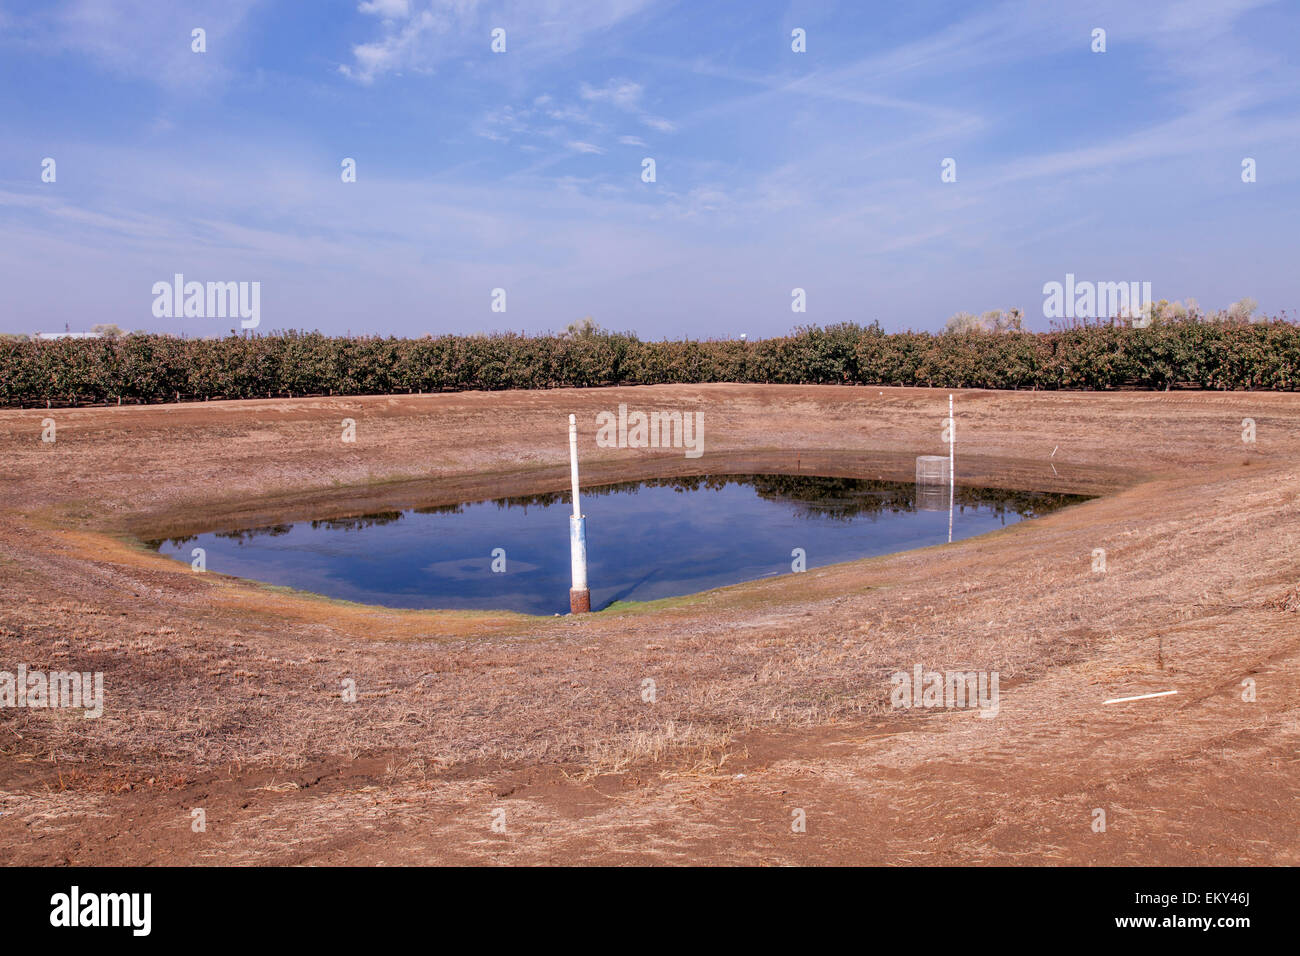 Un étang de retour est situé à l'angle le plus bas d'un champ cultivé de retenir les eaux pluviales et d'irrigation, drainage Tulare Comté Banque D'Images